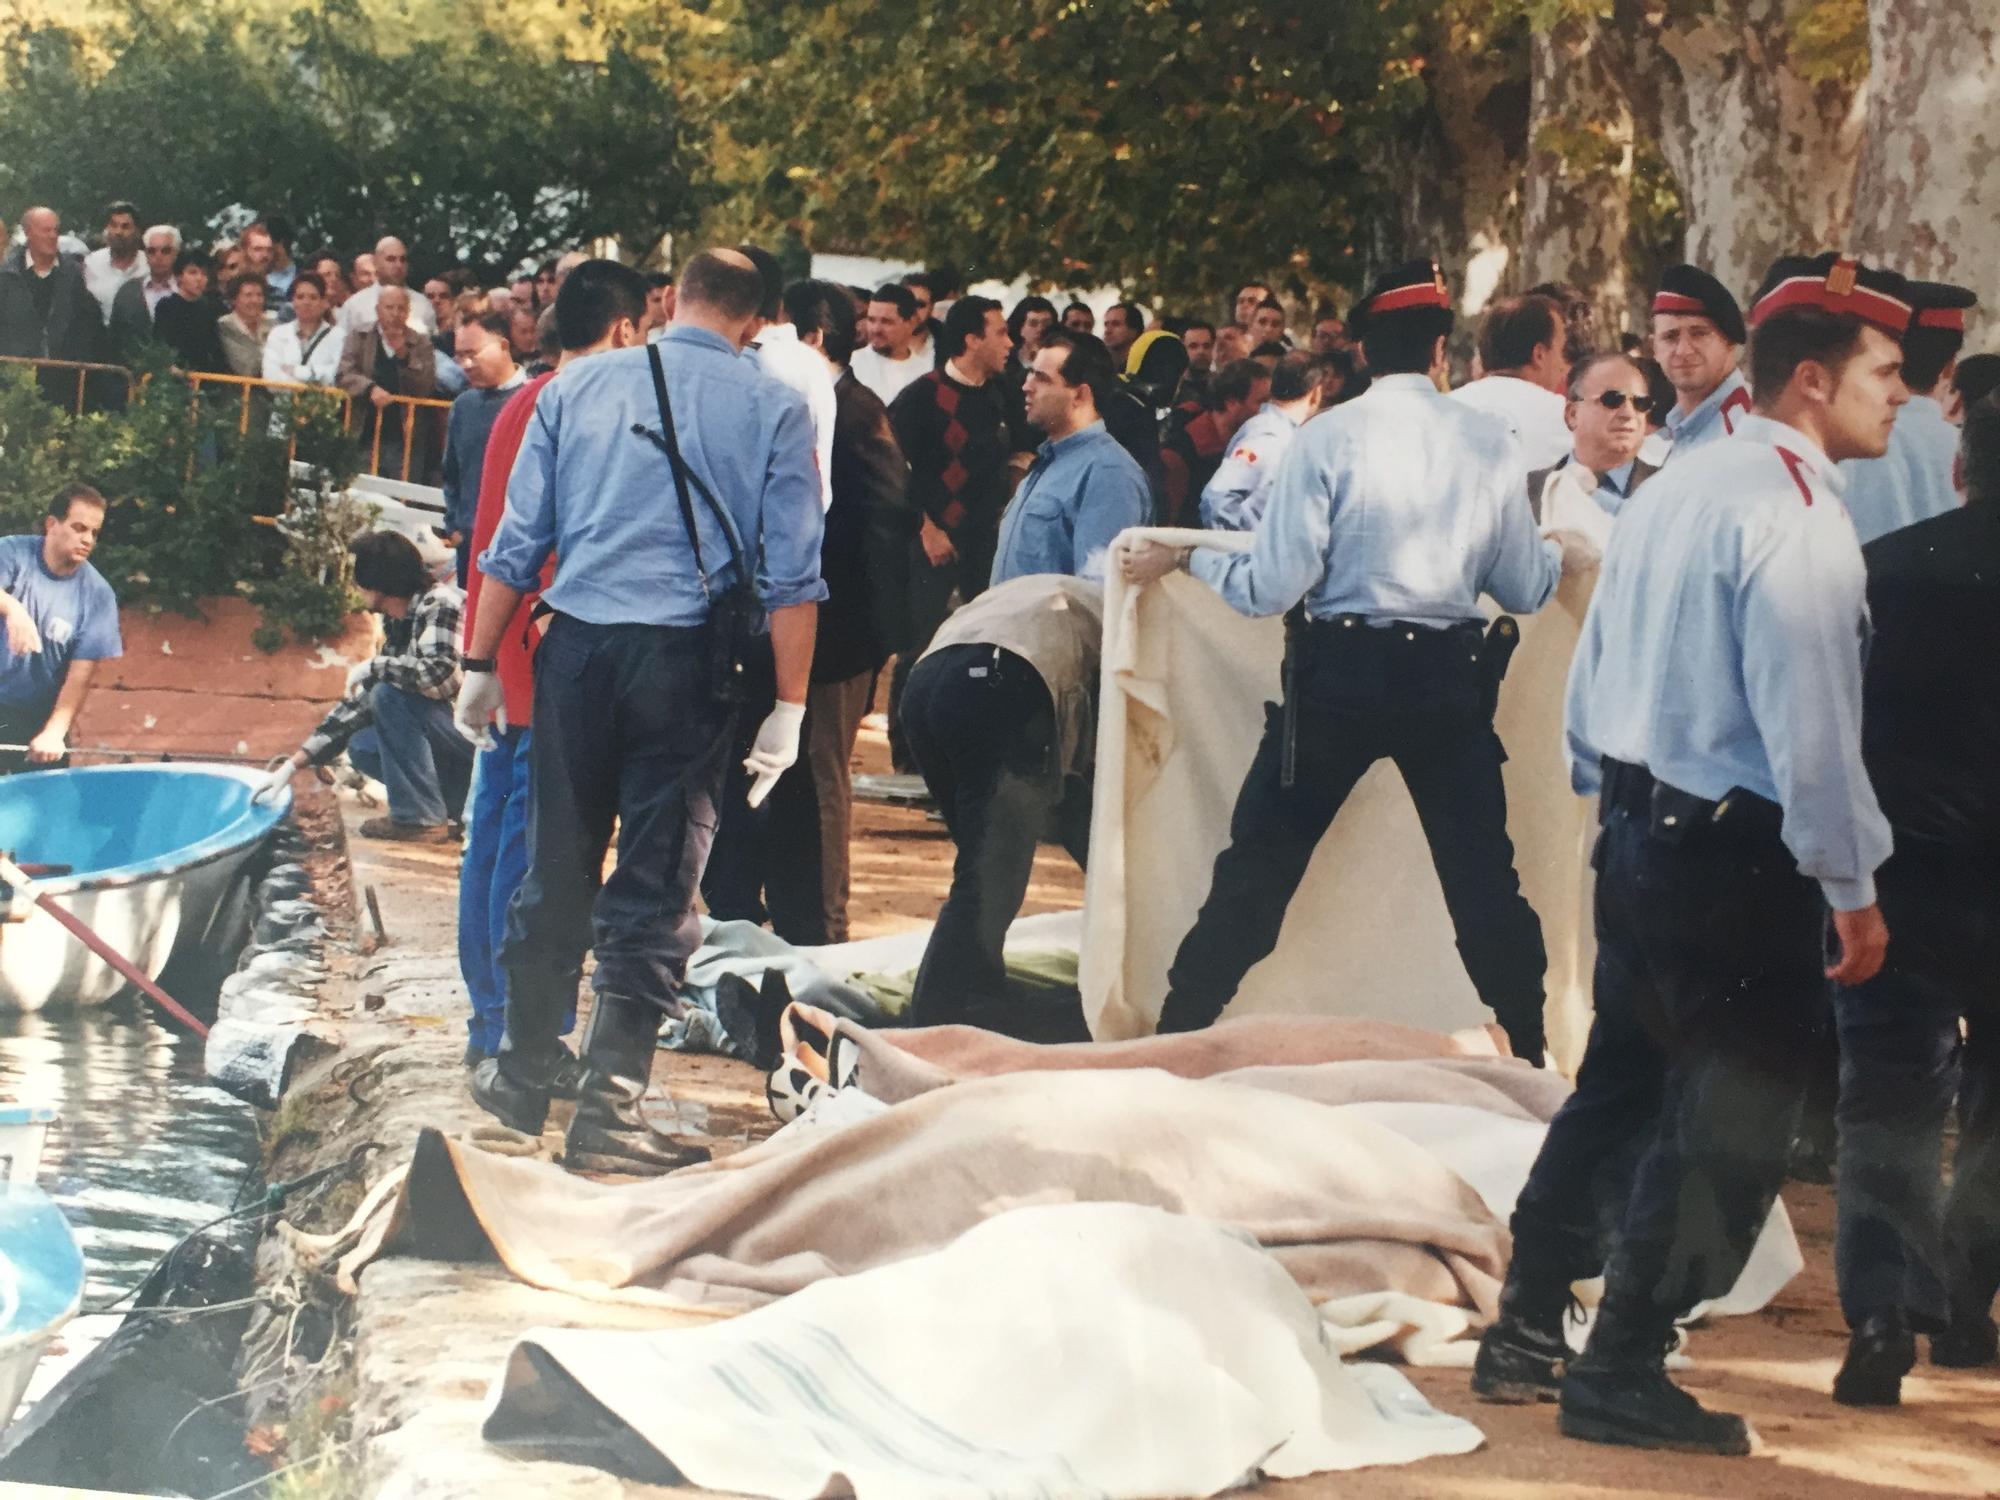 Enfonsament de l'Oca de Banyoles el 9 d'octubre de 1998 amb 20 jubilats morts